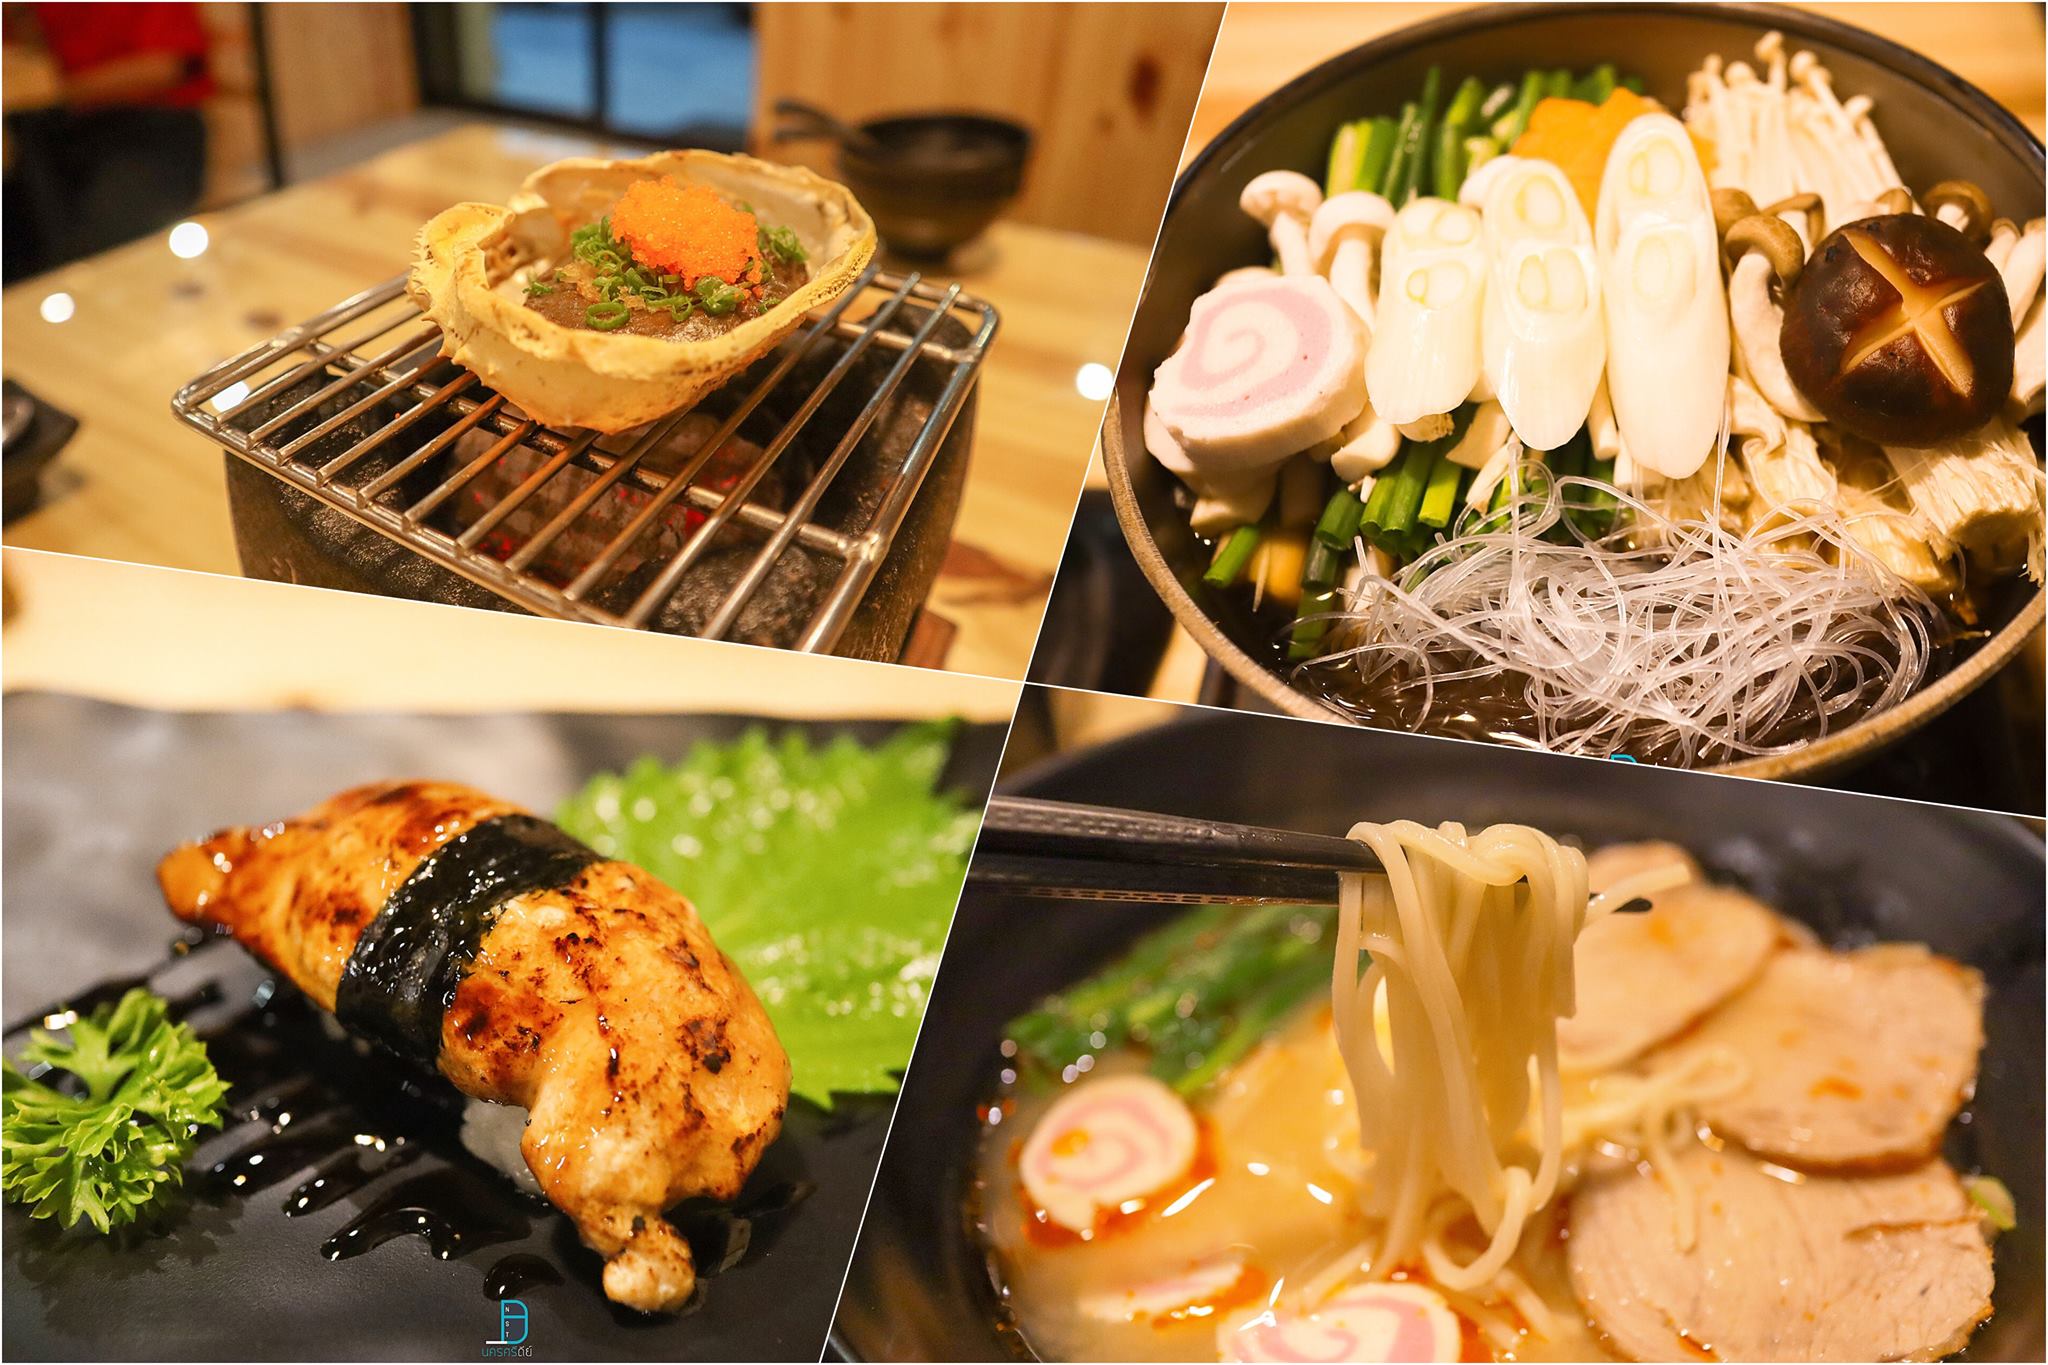  มันปูในกระดอง-ชาบูนาเบะ-ตับห่าน-ราเมง
 ร้านอาหารญี่ปุ่น,นครศรีธรรมราช,ของกิน,ร้านอร่อย,อำเภอเมือง,กินอะไรดี,ของหรอย,อาหารญี่ปุ่น